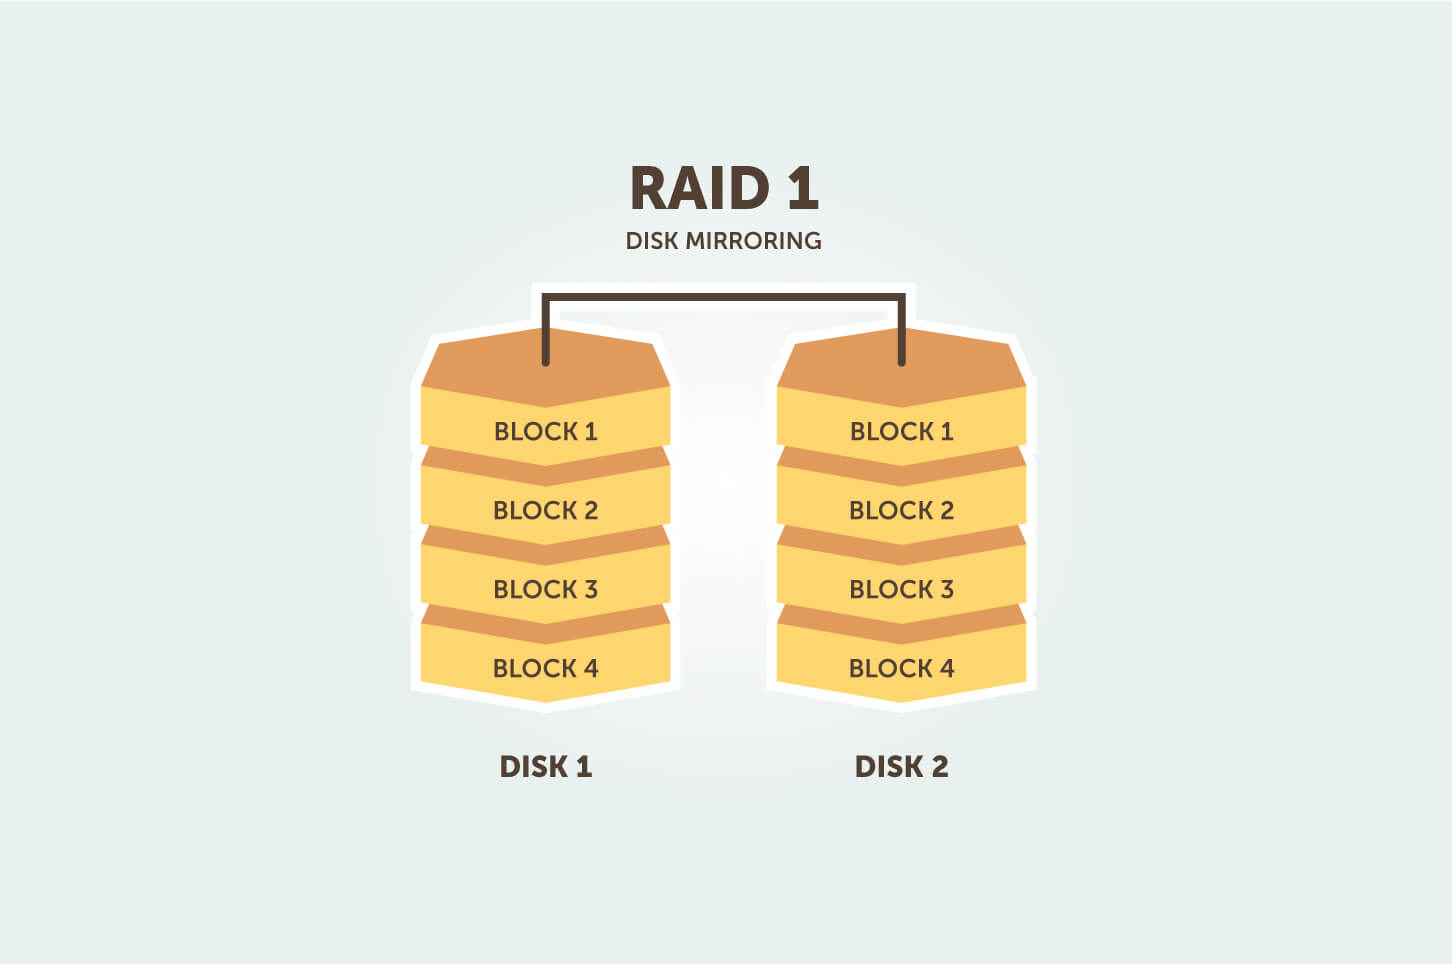 raid 1